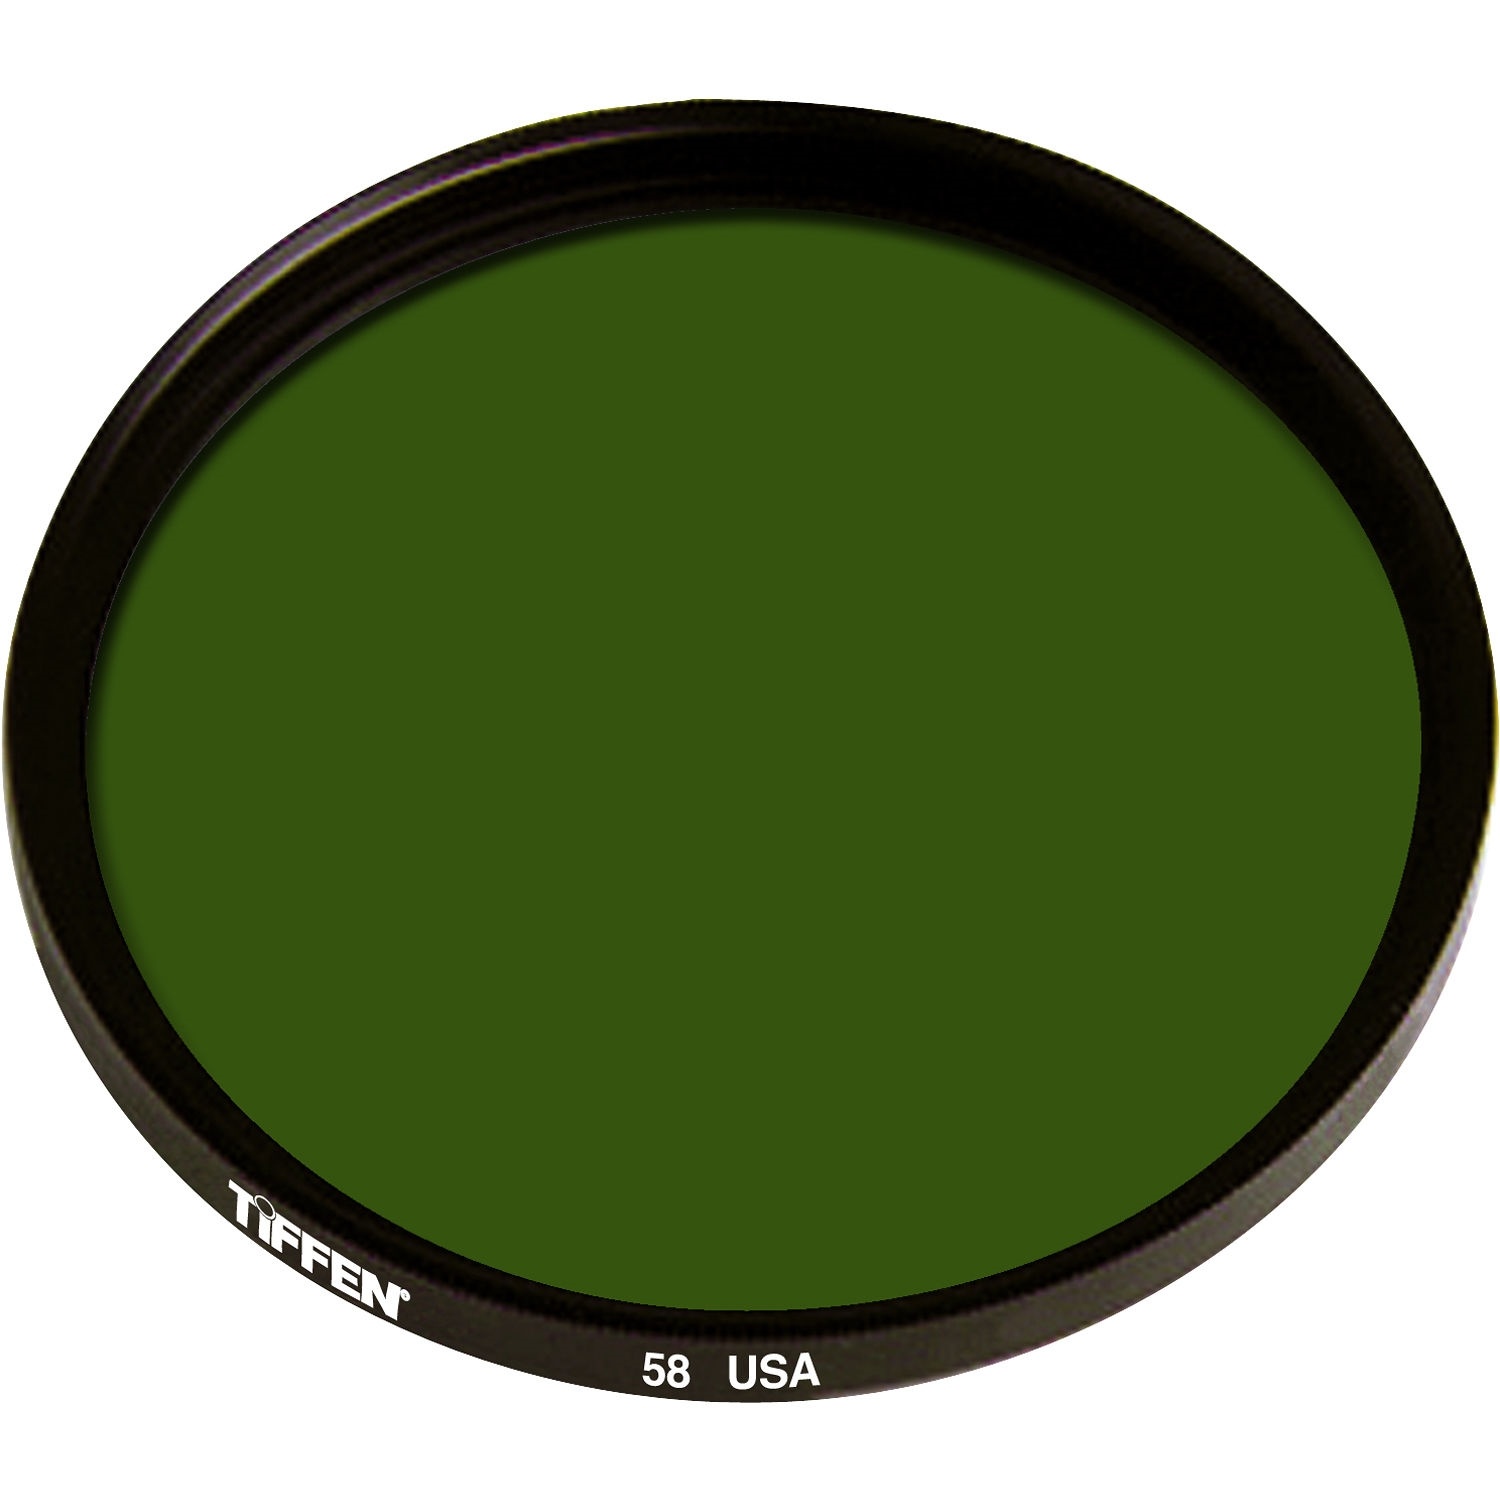 Tiffen 49mm Green 58 Glass Filter for Black & White Film